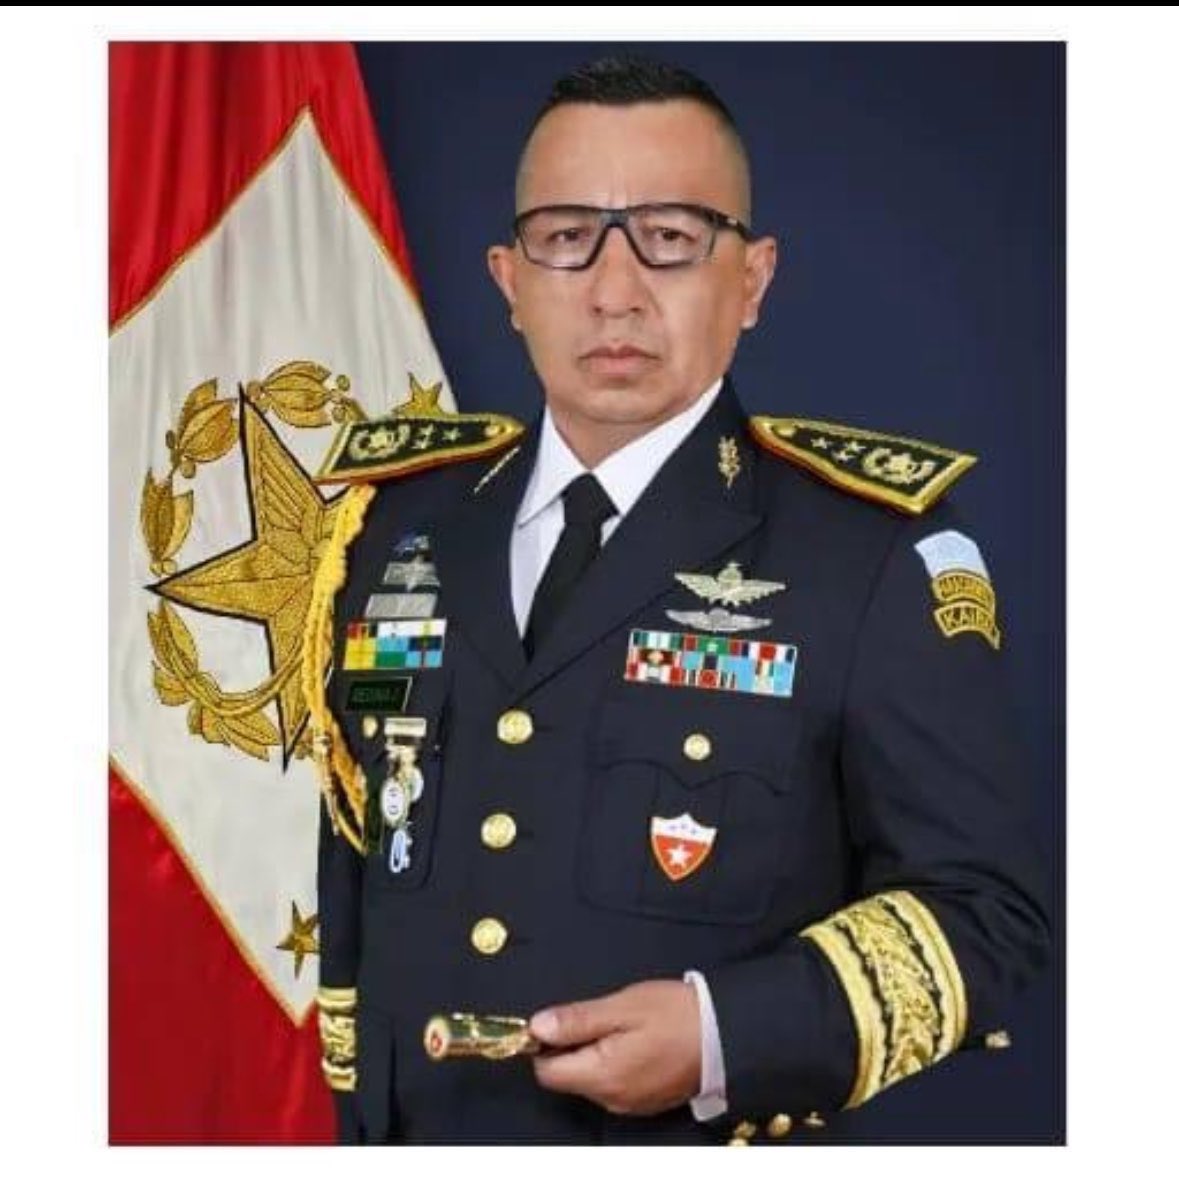 Halcón Caído
—repito, Halcón Caído 

General Medina Juárez, Jefe del Estado Mayor.  

#OnFire